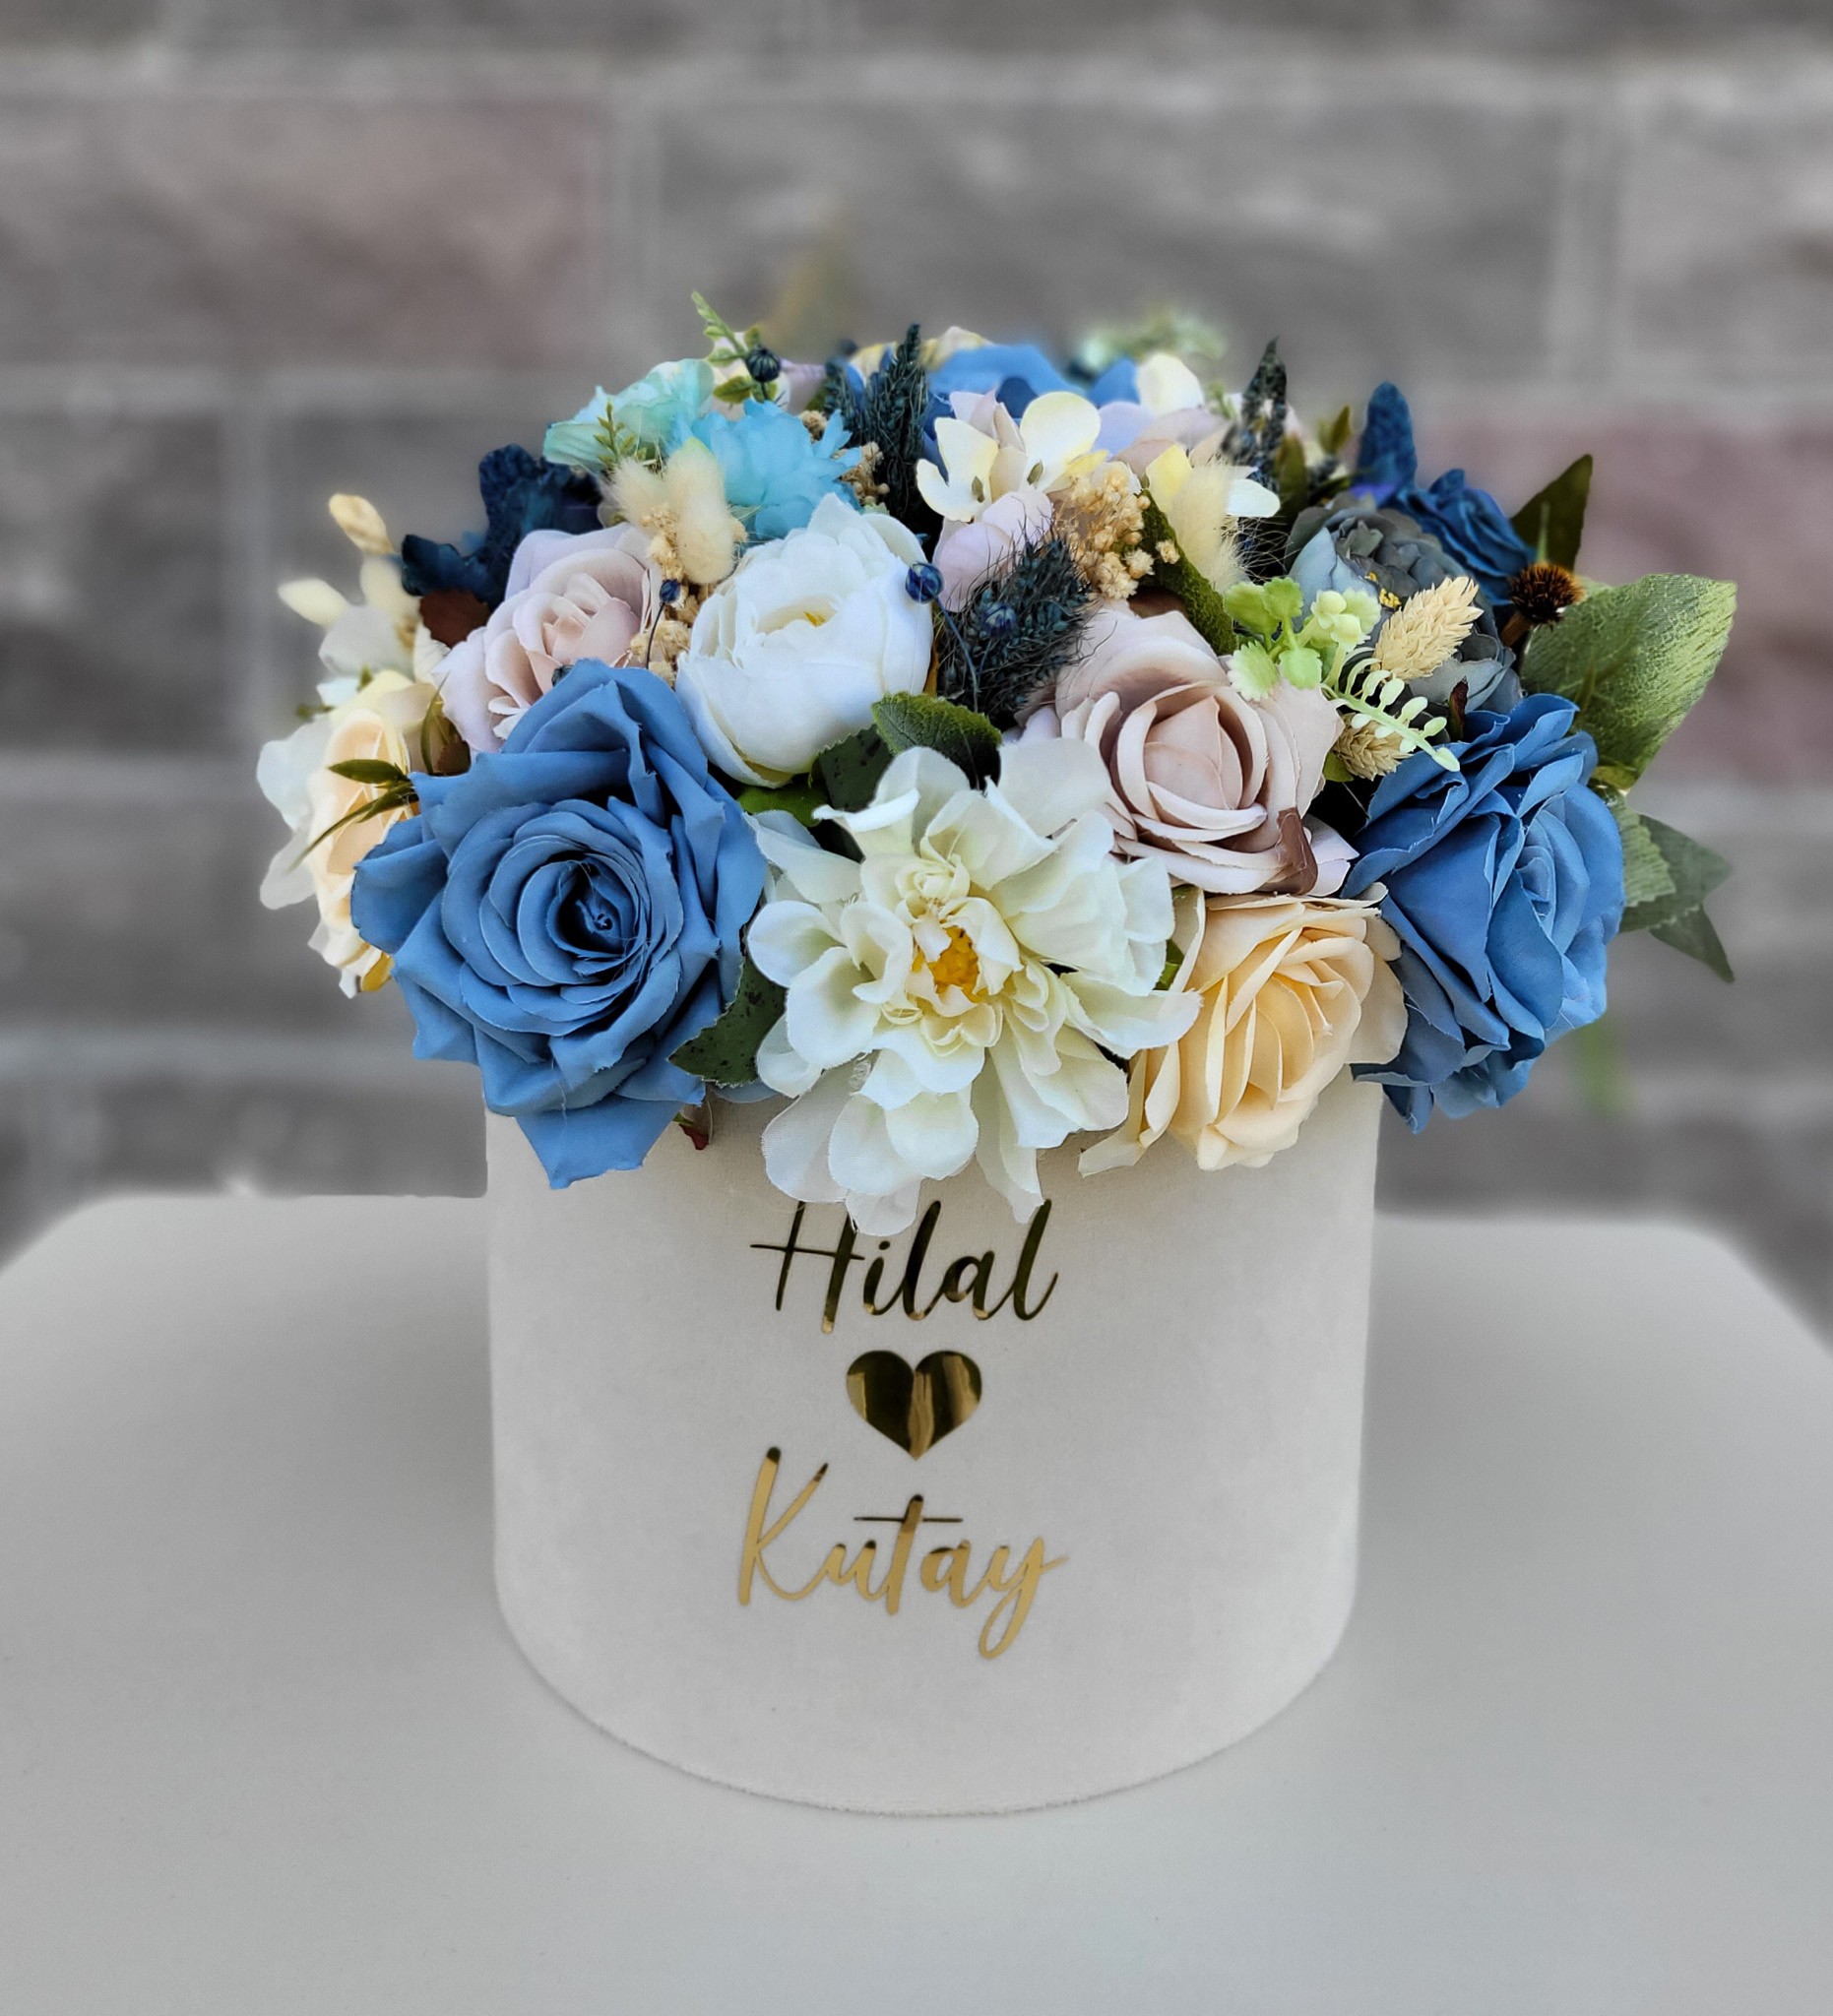 Kutuda Kız İsteme Çiçeği Nişan Çikolatası - Mavi Krem Renk Set 